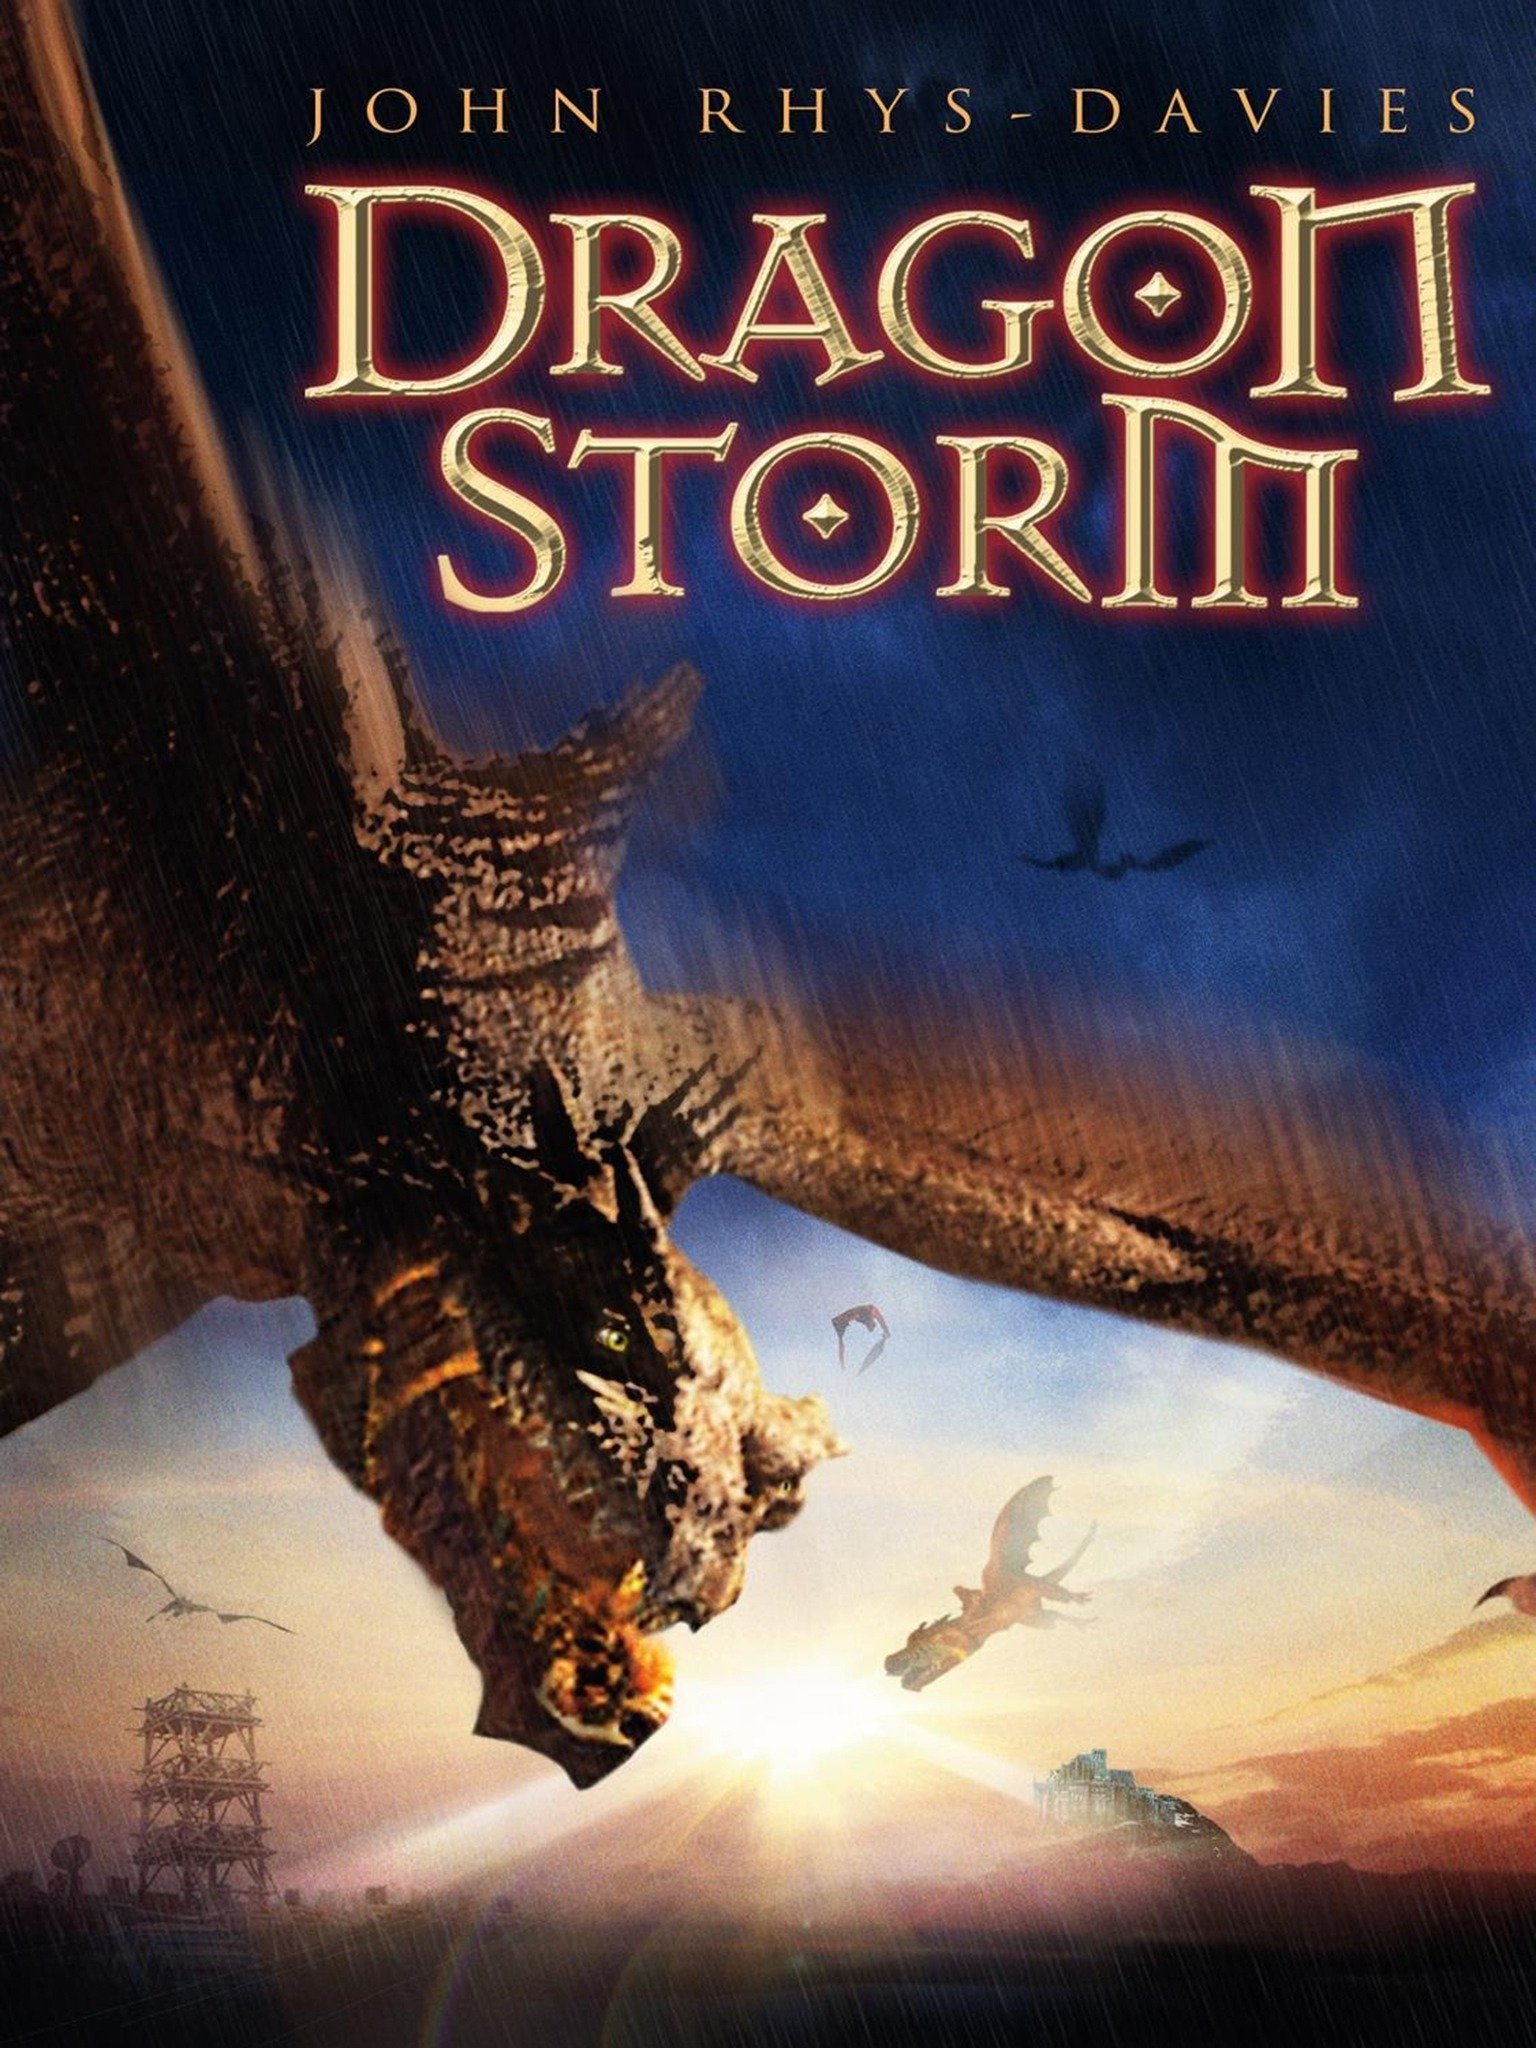 Власть дракона (2004)